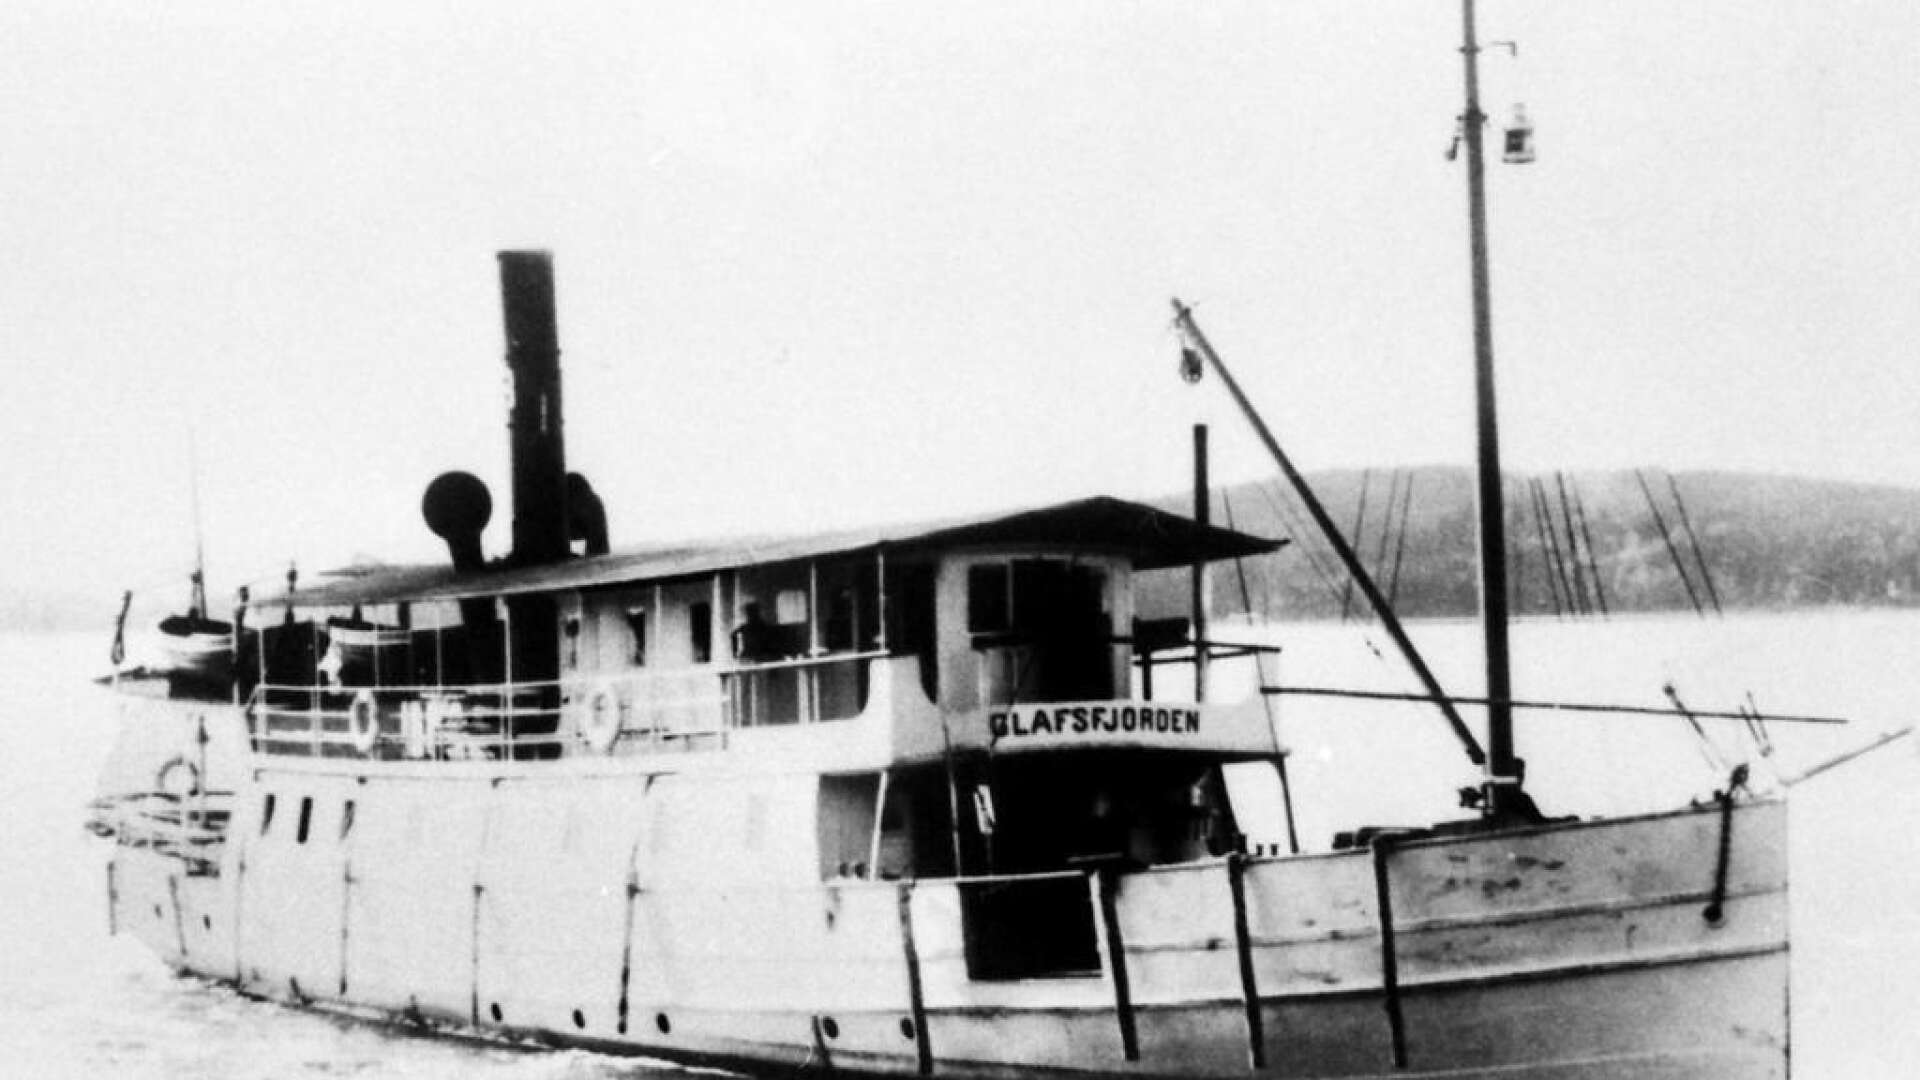 Det sista fartyget i reguljär trafik mellan Säffle och Arvika var Glafsfjorden. Trafiken upphörde 1935. Sedan dess har fartyget haft olika ägare. Idag finns hon i Enköping och det är också vad hon nu heter. Det var en gång också fartygets första namn. Nästa år fyller hon 150 år och skall vara världens äldsta propellerfartyg i sitt slag i drift.